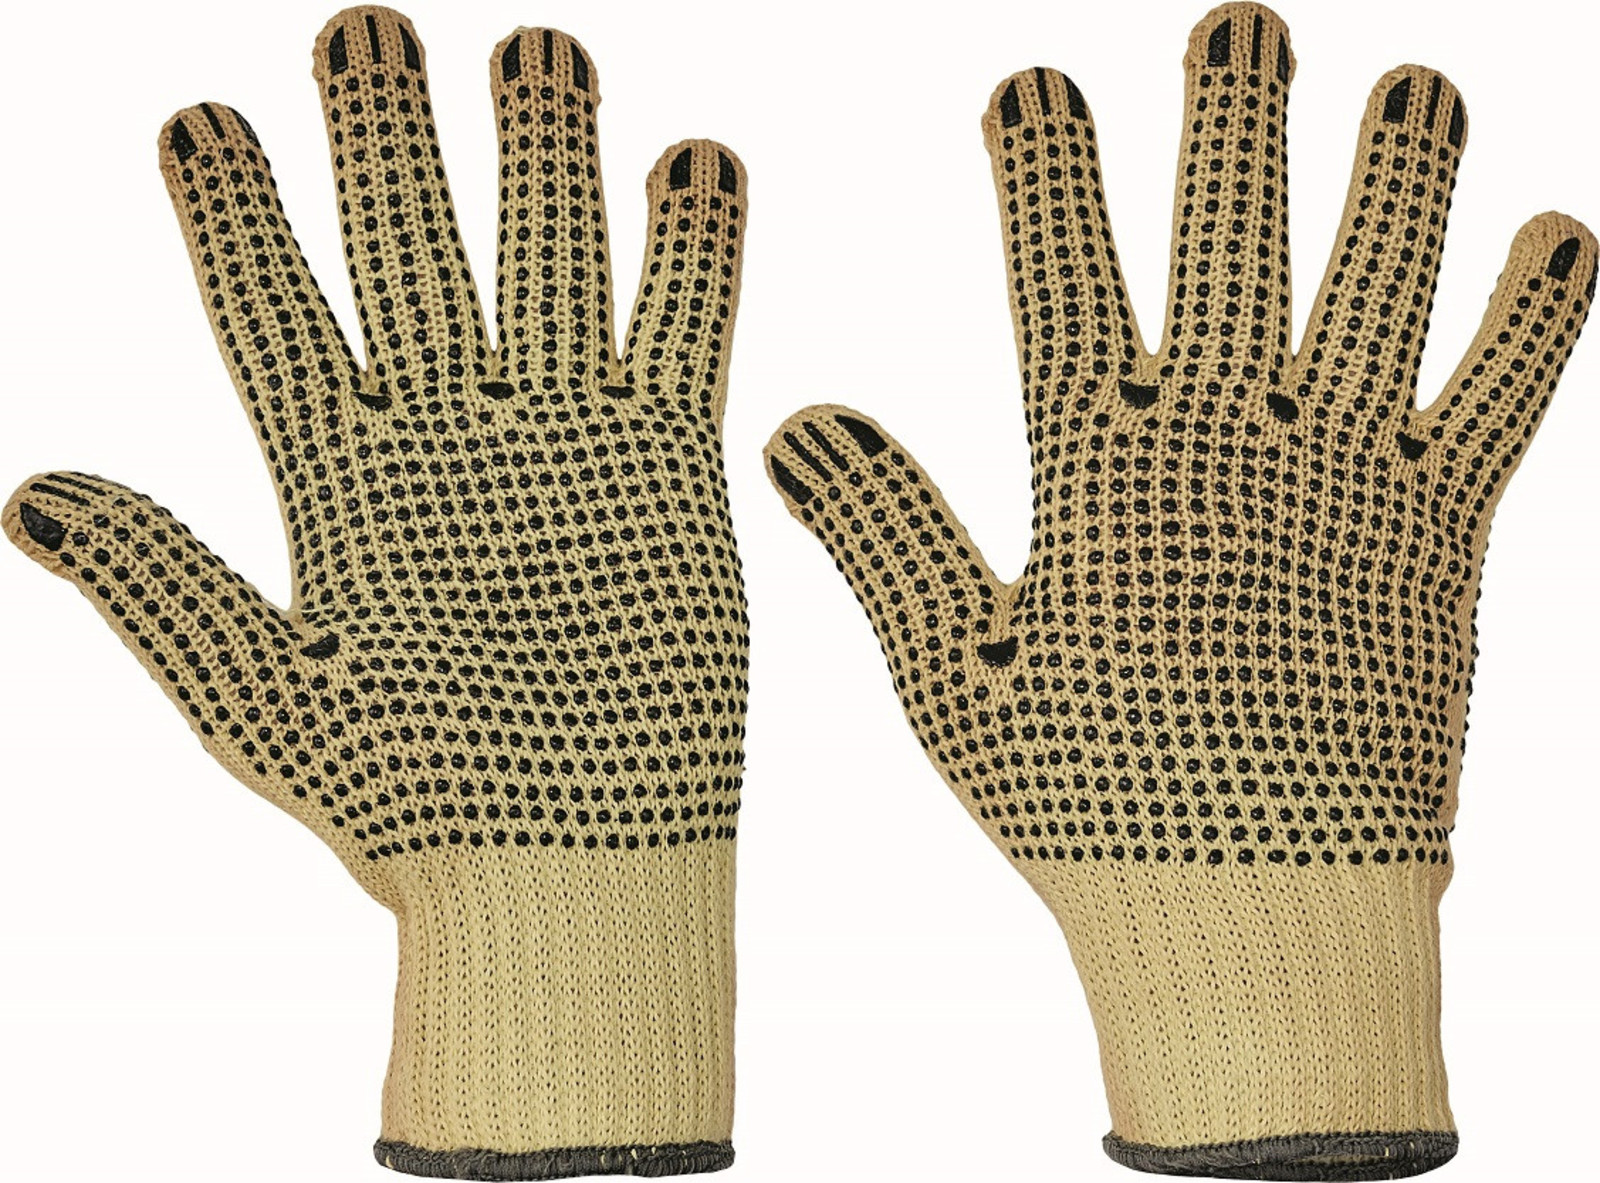 Protiporézne rukavice Chiffchaff,terčíky  - veľkosť: 9/L